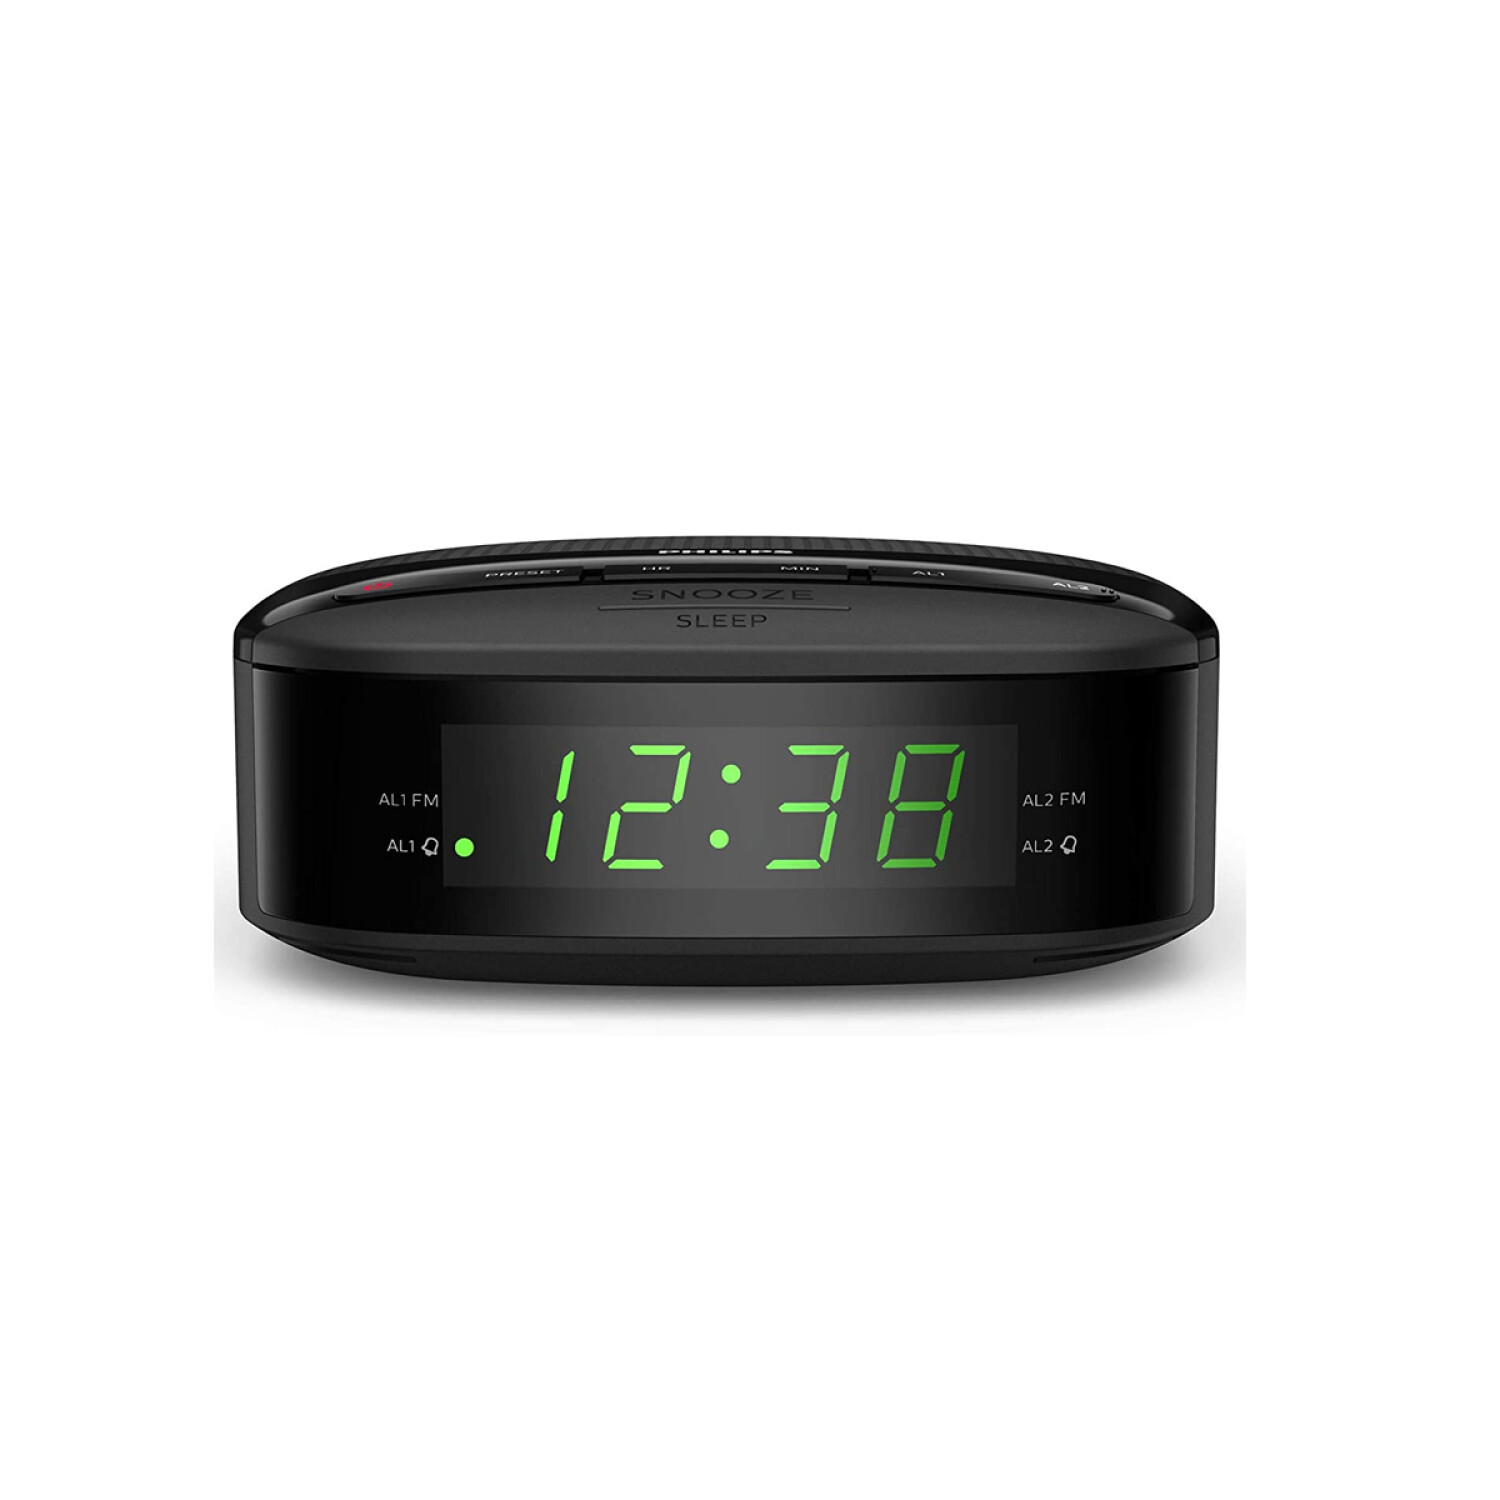 Radio Reloj Despertador Philips Doble Alarma Y Temporizador — Game